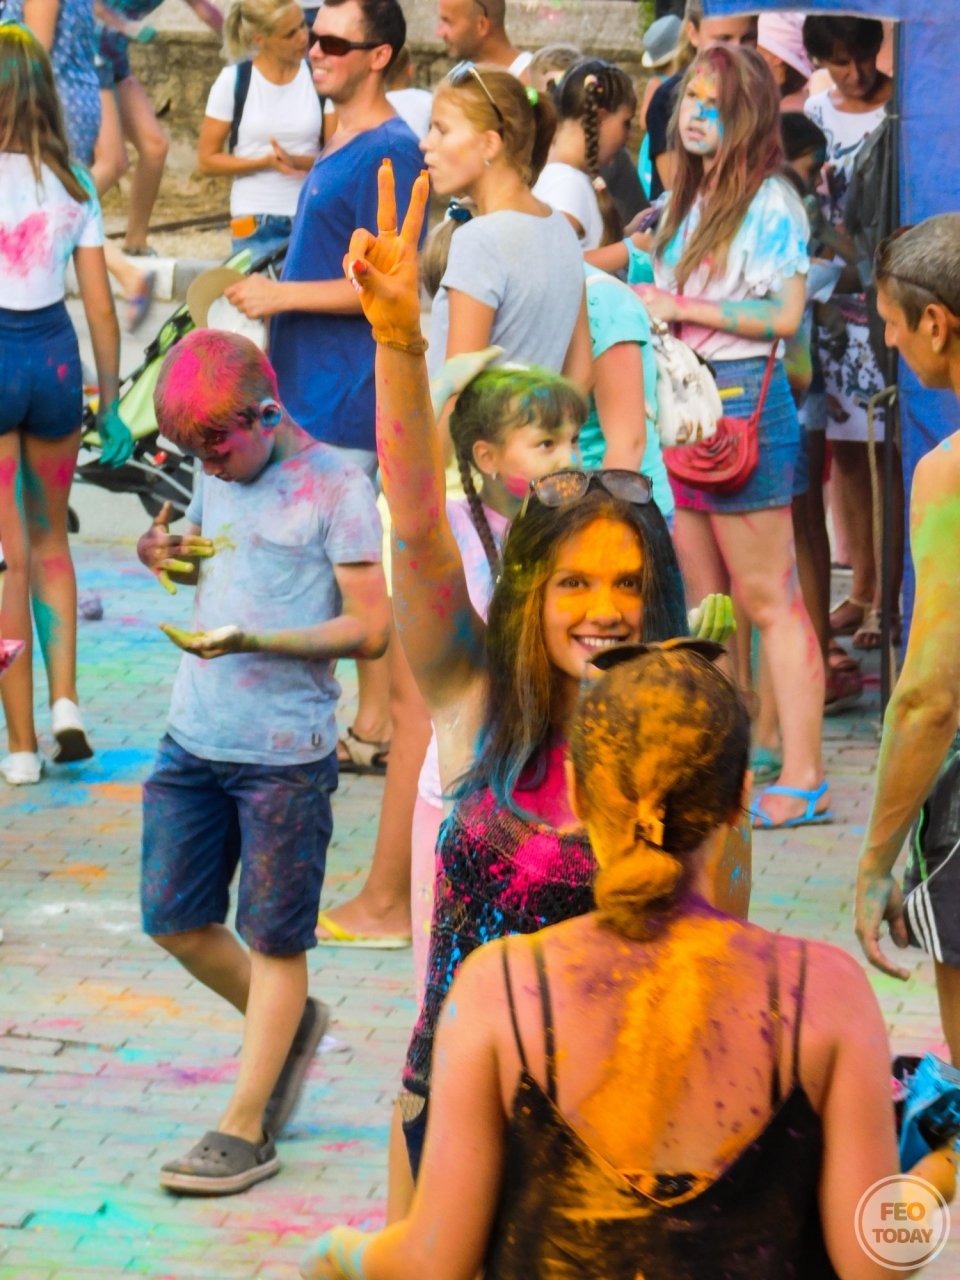 Фото фестиваля красок Холи на 200-летие Айвазовского #1672